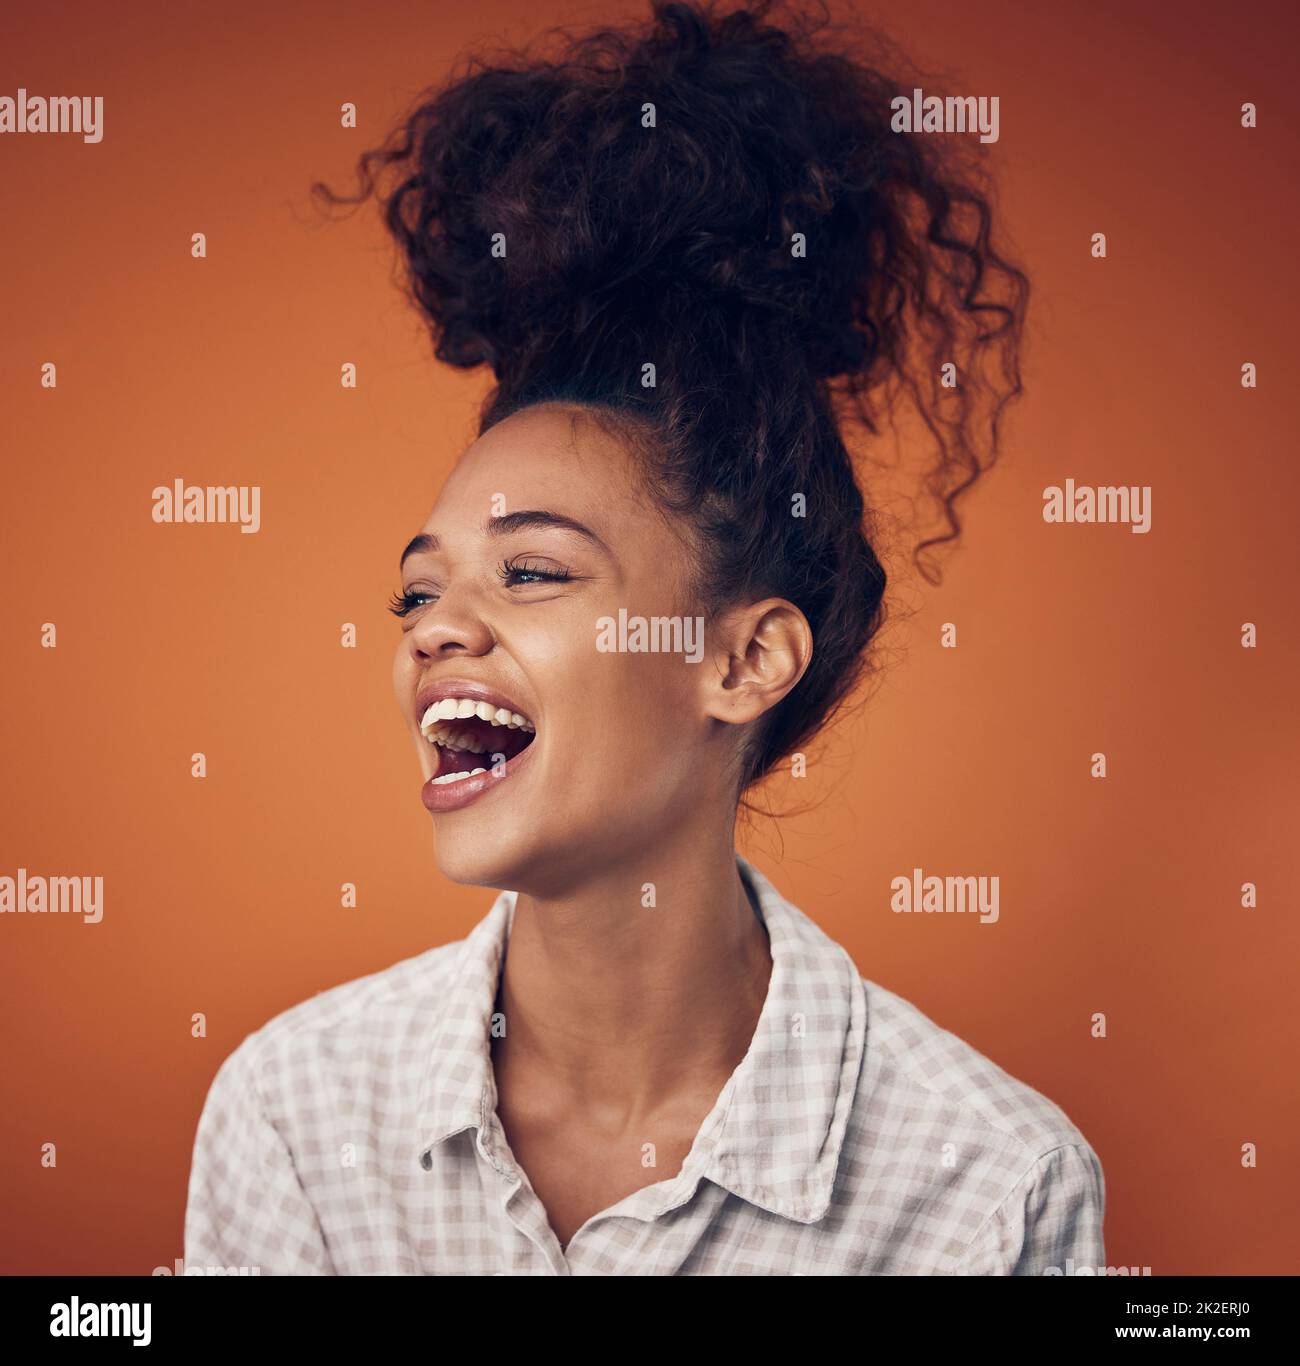 Non riesco a smettere di ridere. Scatto di una giovane donna che indossa i capelli in una pistola contro uno sfondo arancione. Foto Stock